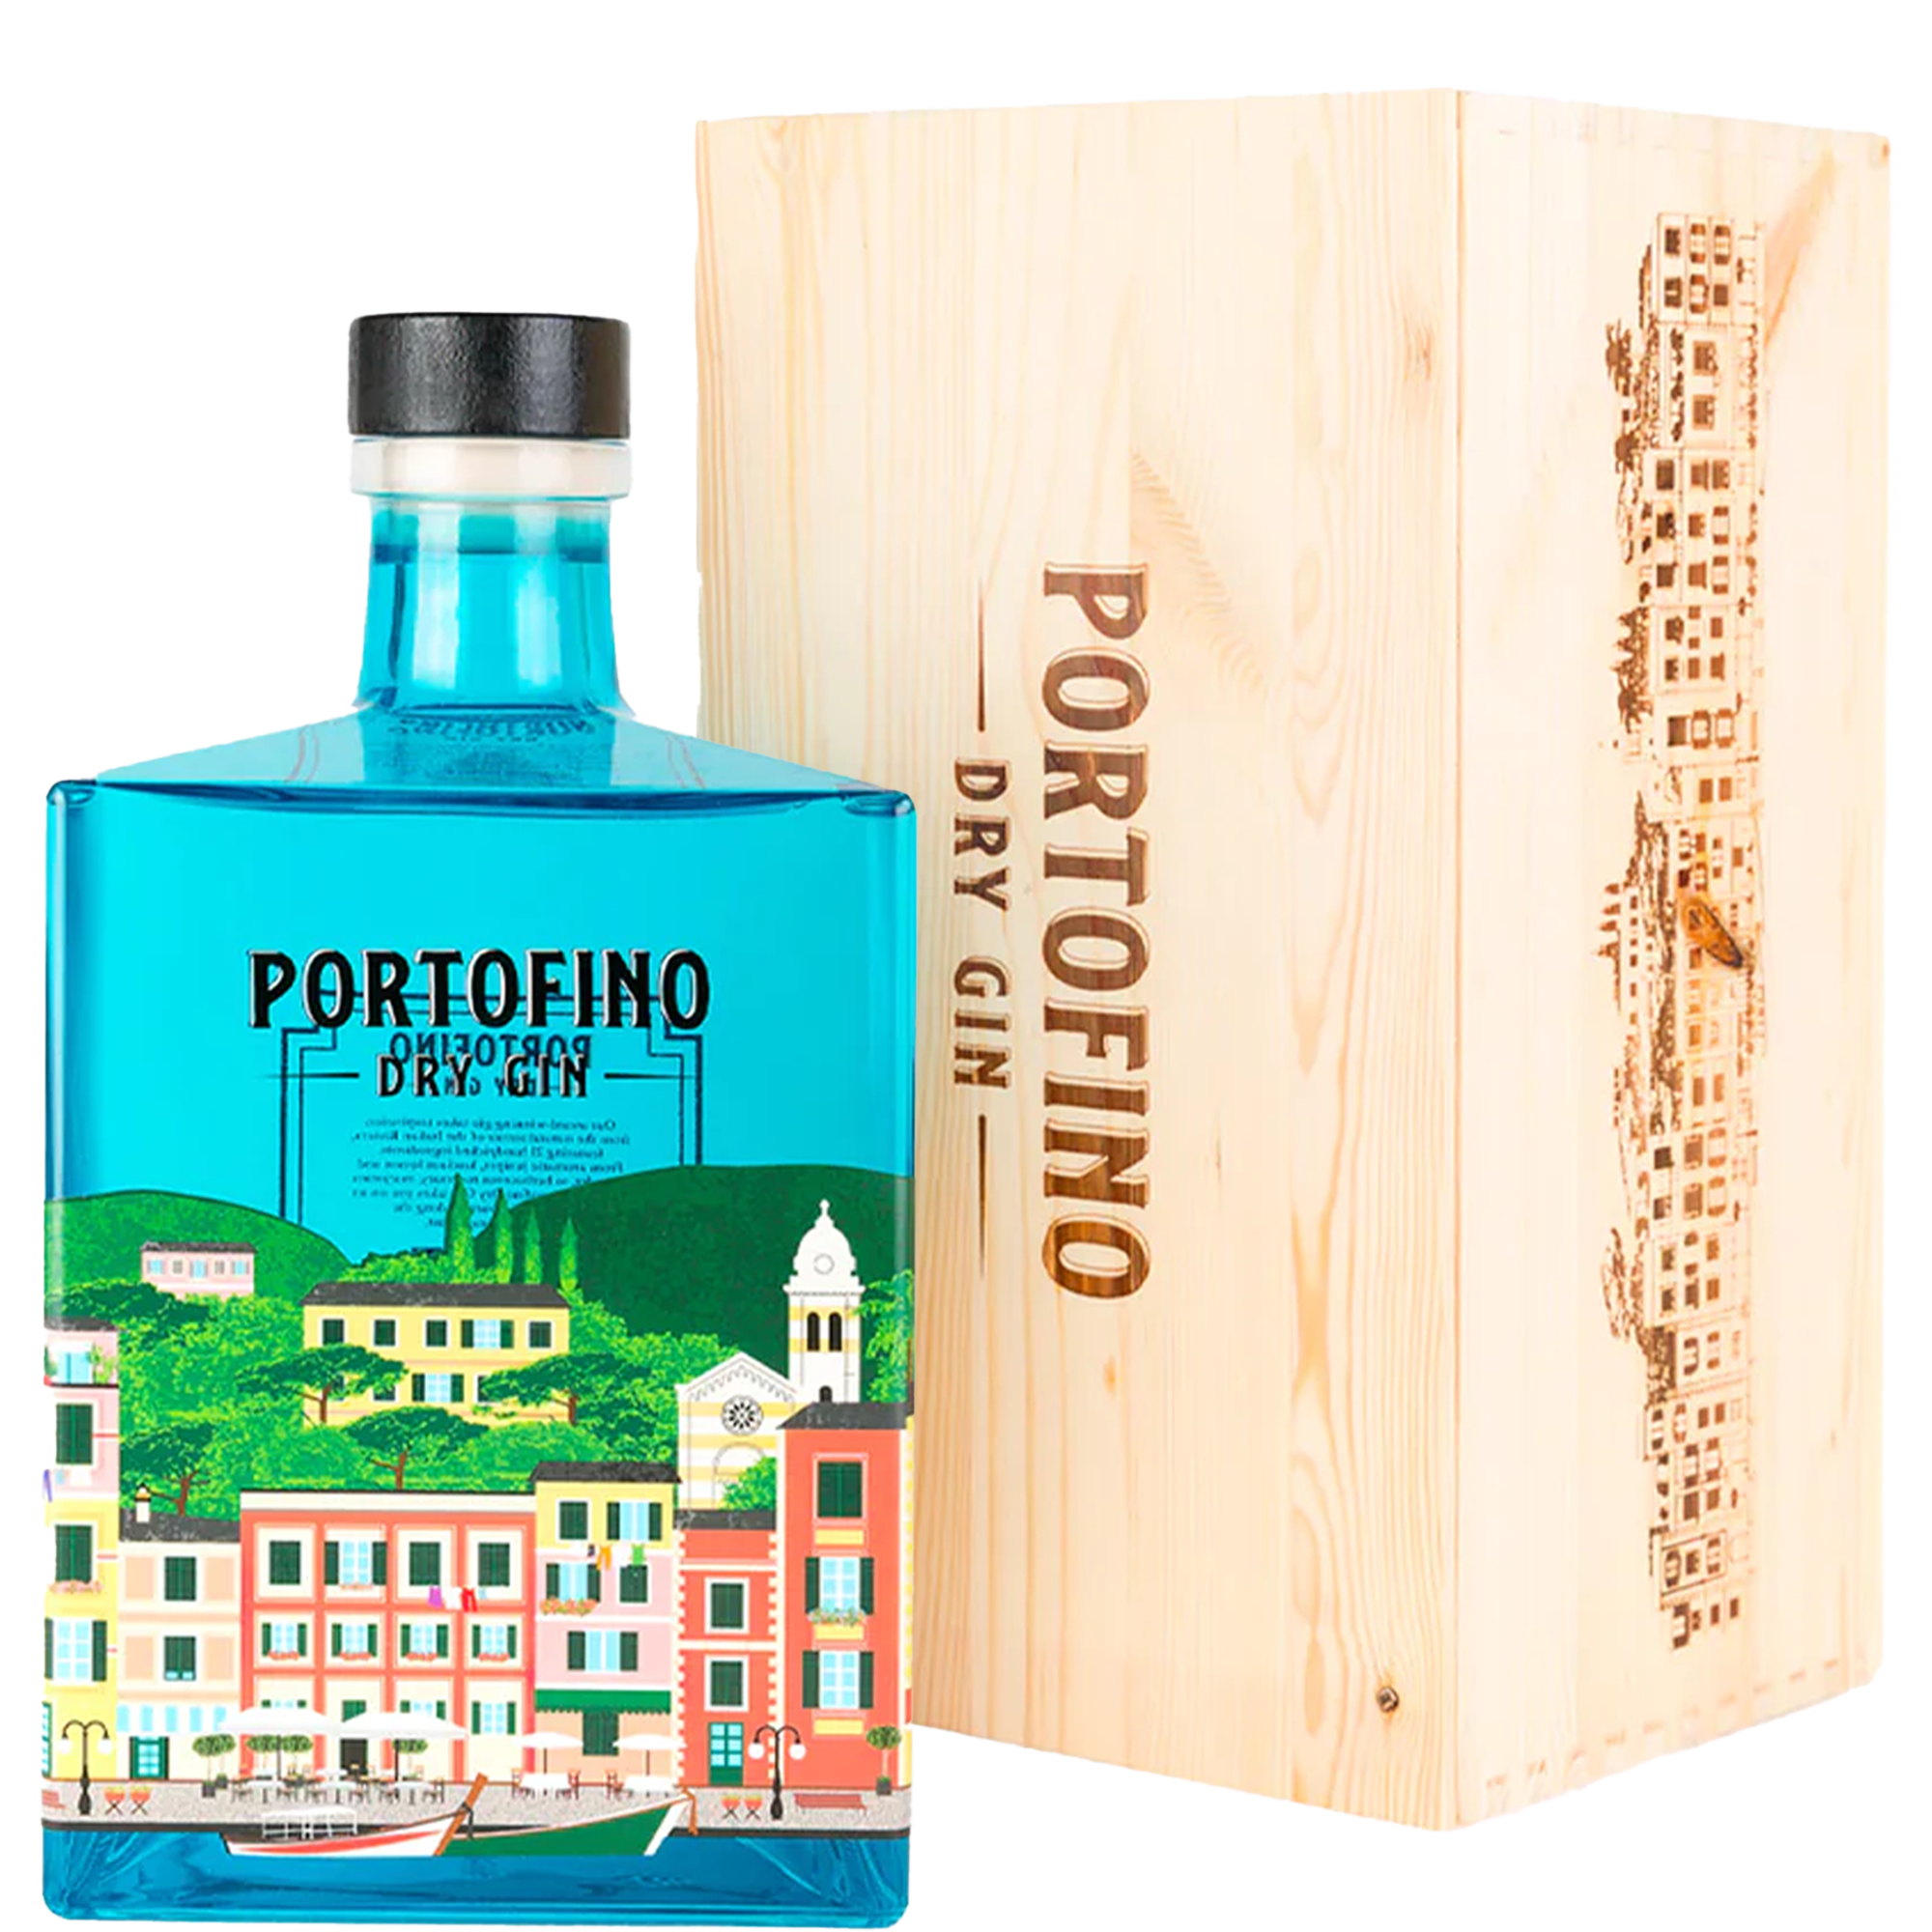 Gin z włoch, Butelka Portofino Dry Gin 5 L wraz z drewnianym pudełkiem prezentowym